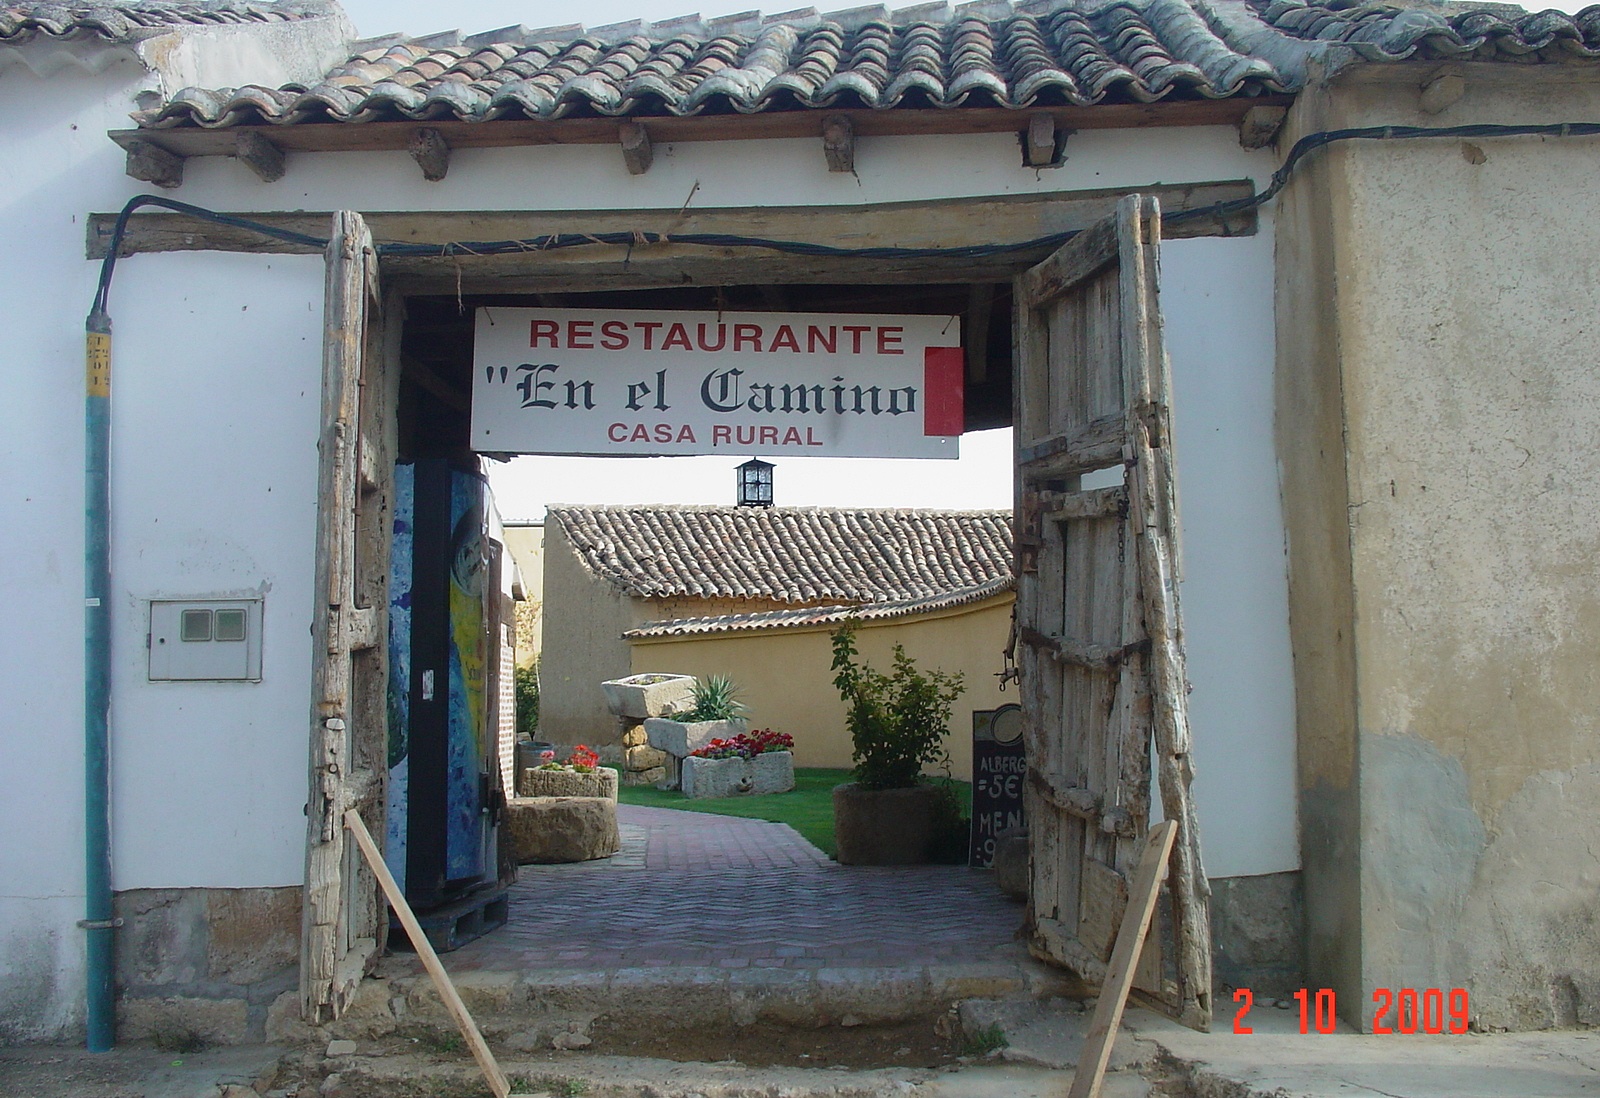 hinter diesem Tor hätte ich diese wunderschöne Herberge "En El Camino" nicht erwartet